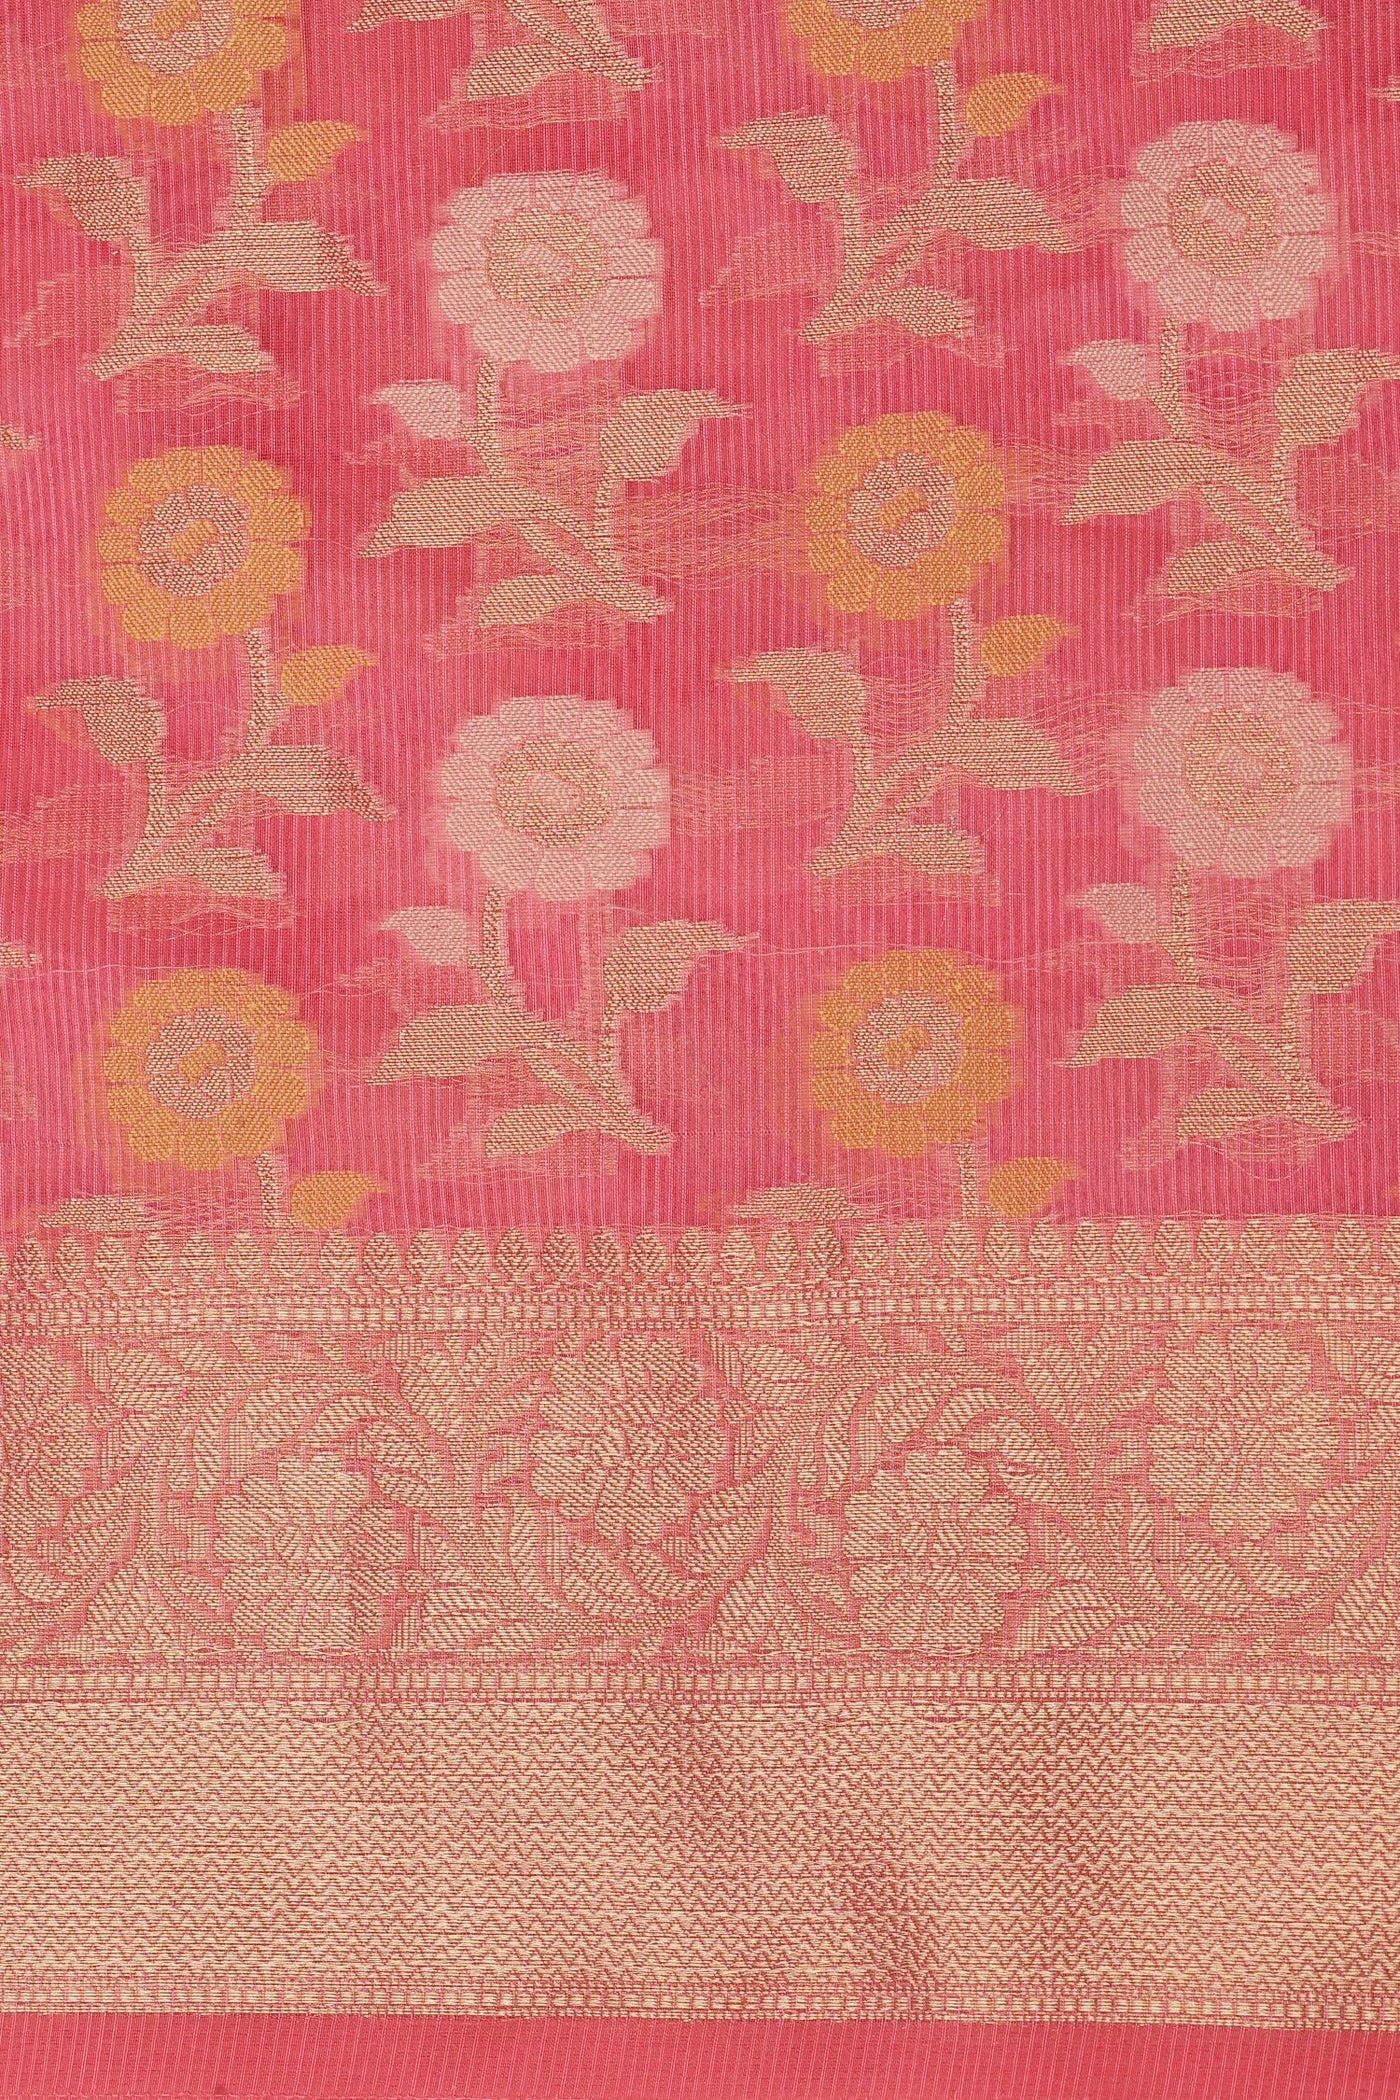 Enchanting Pink Cotton Silk Saree: A Floral Symphony